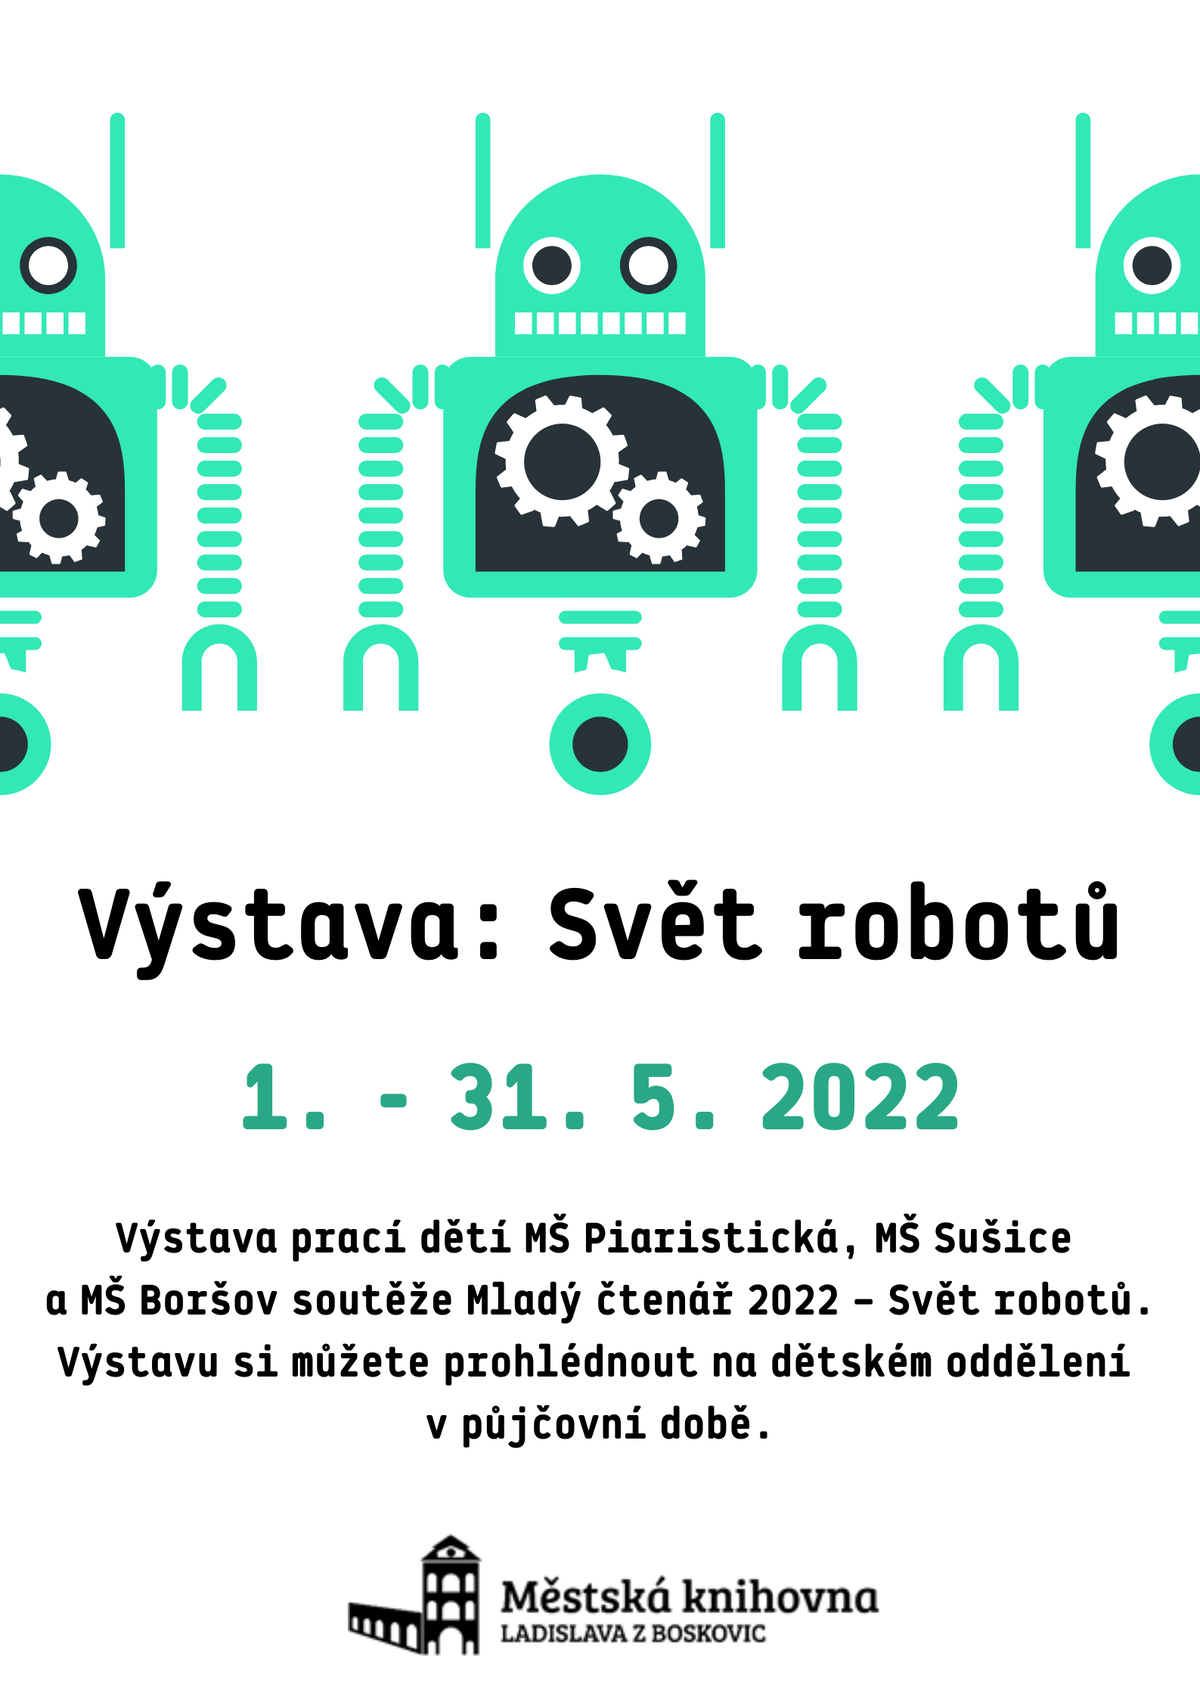 Vystava Svet robotu kveten 2022.png